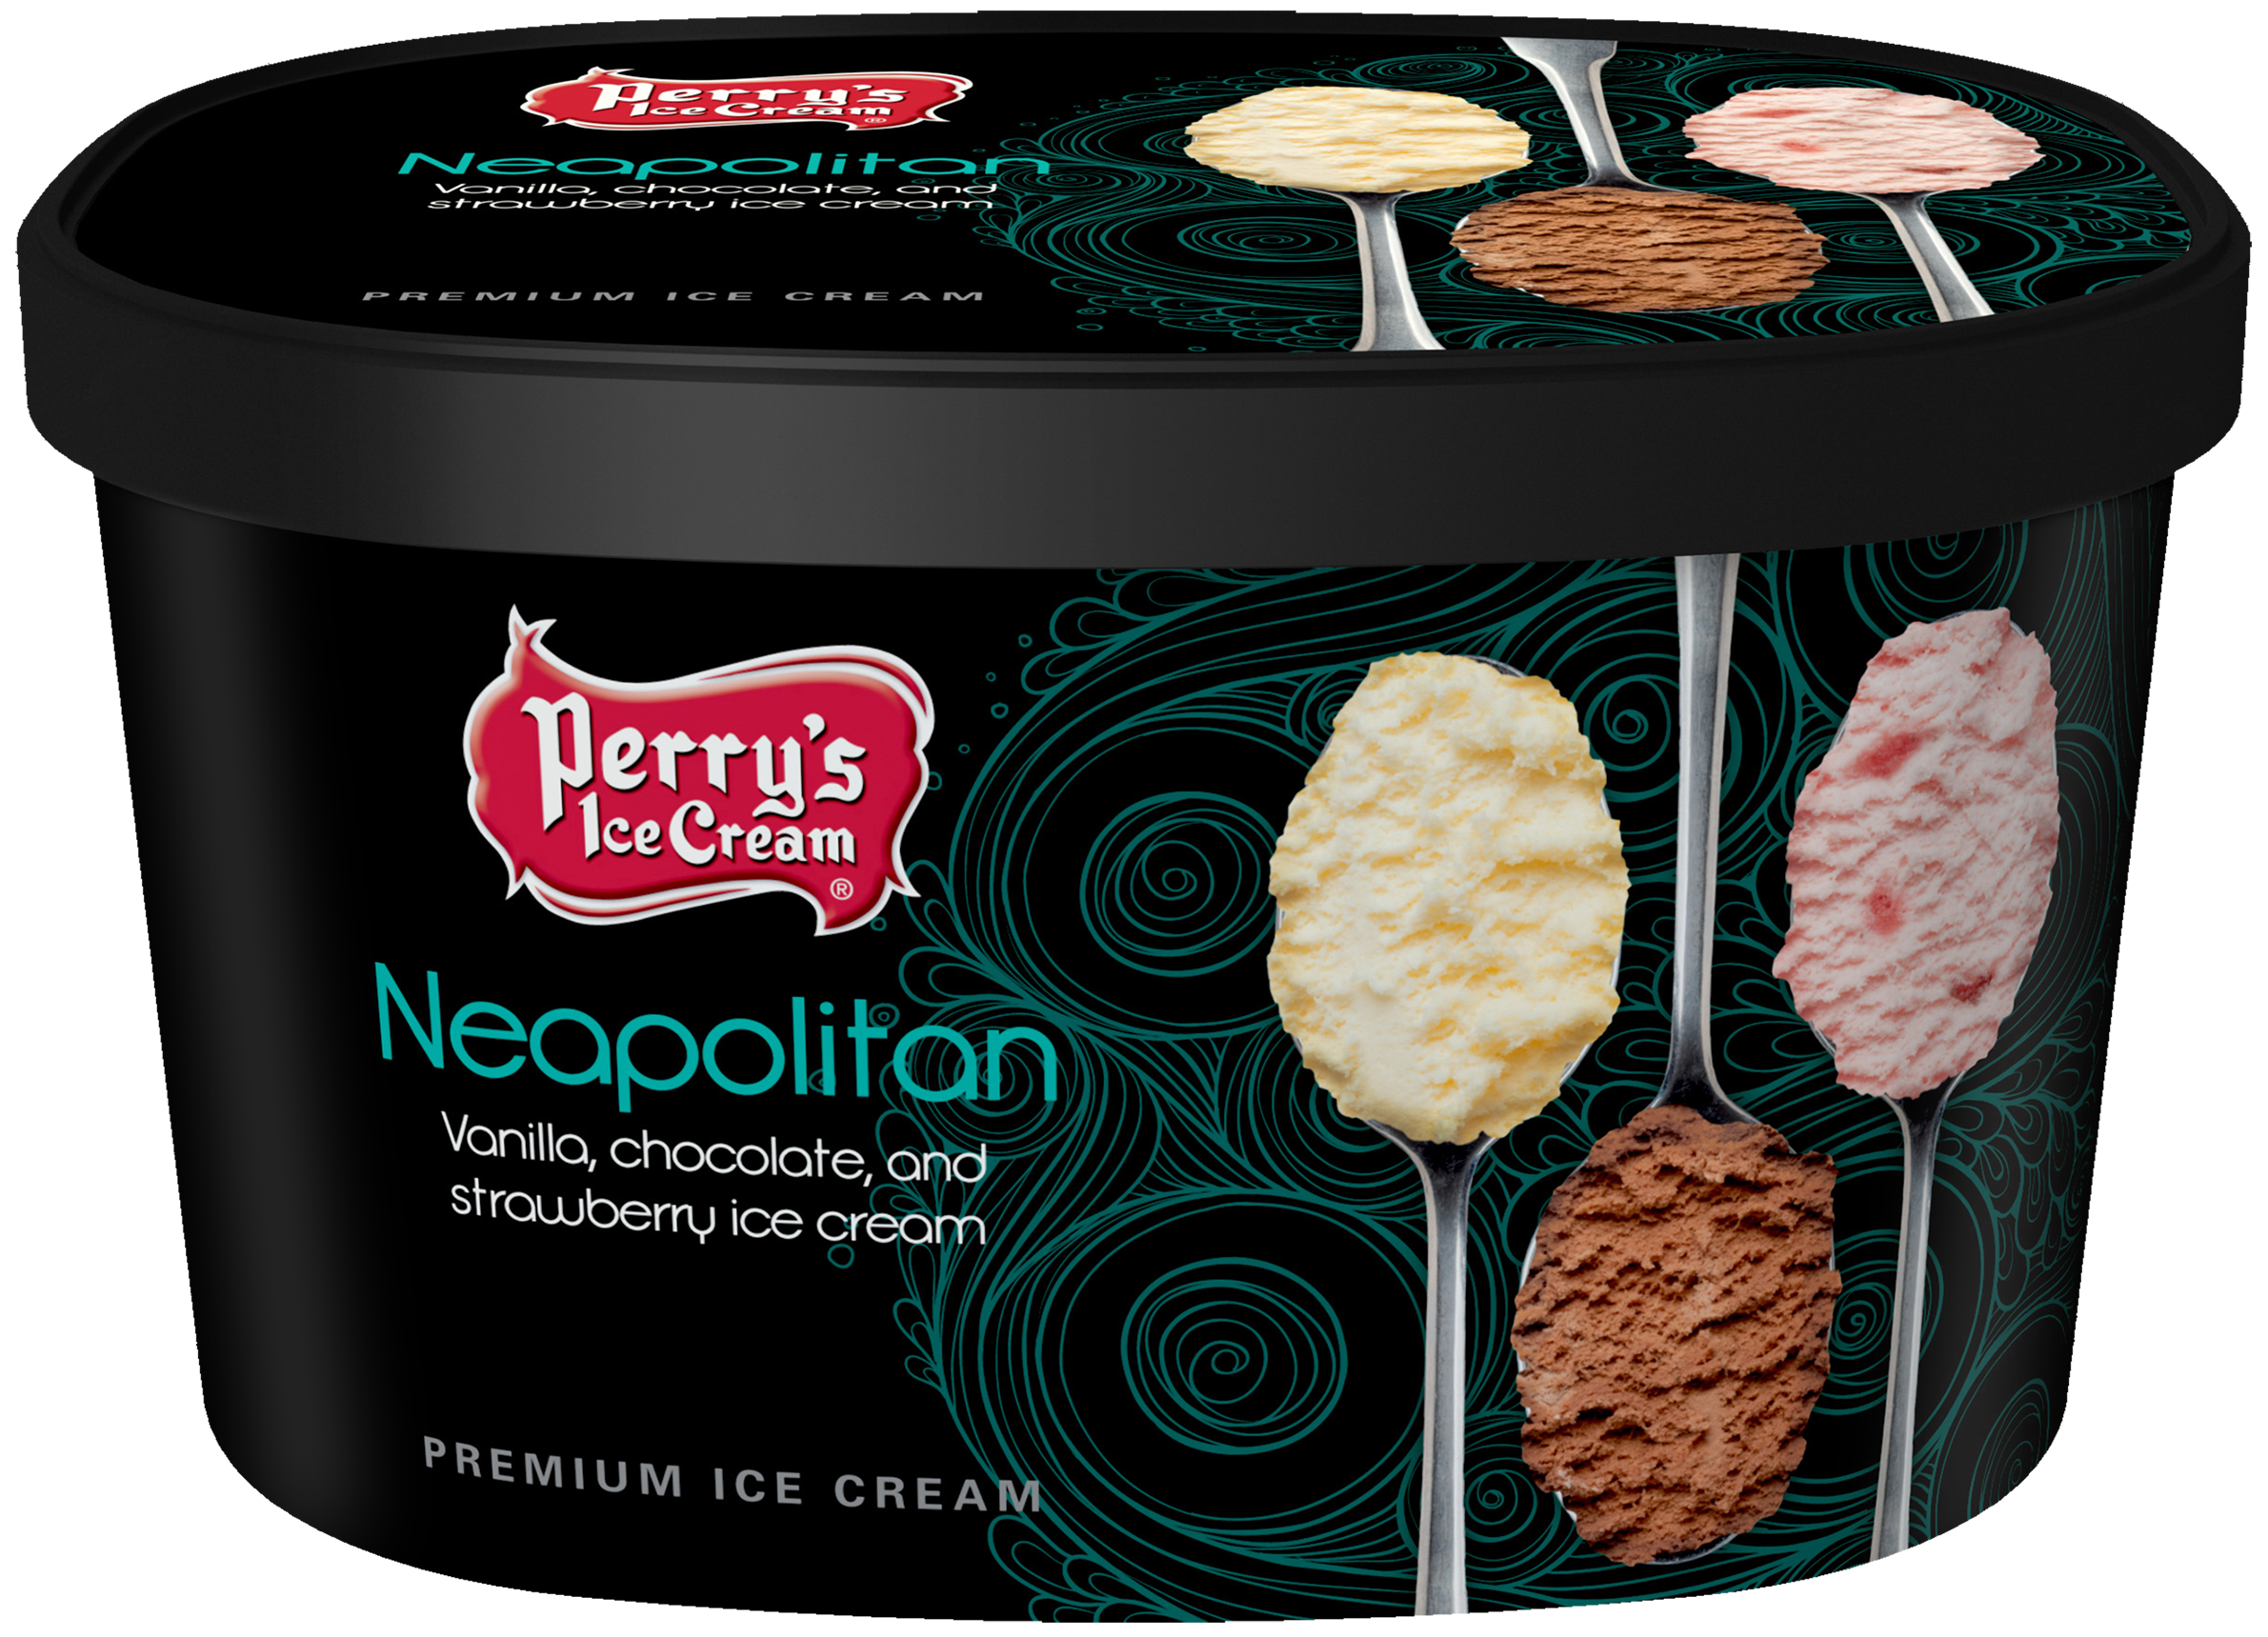 Perry's Neapolitan ice cream